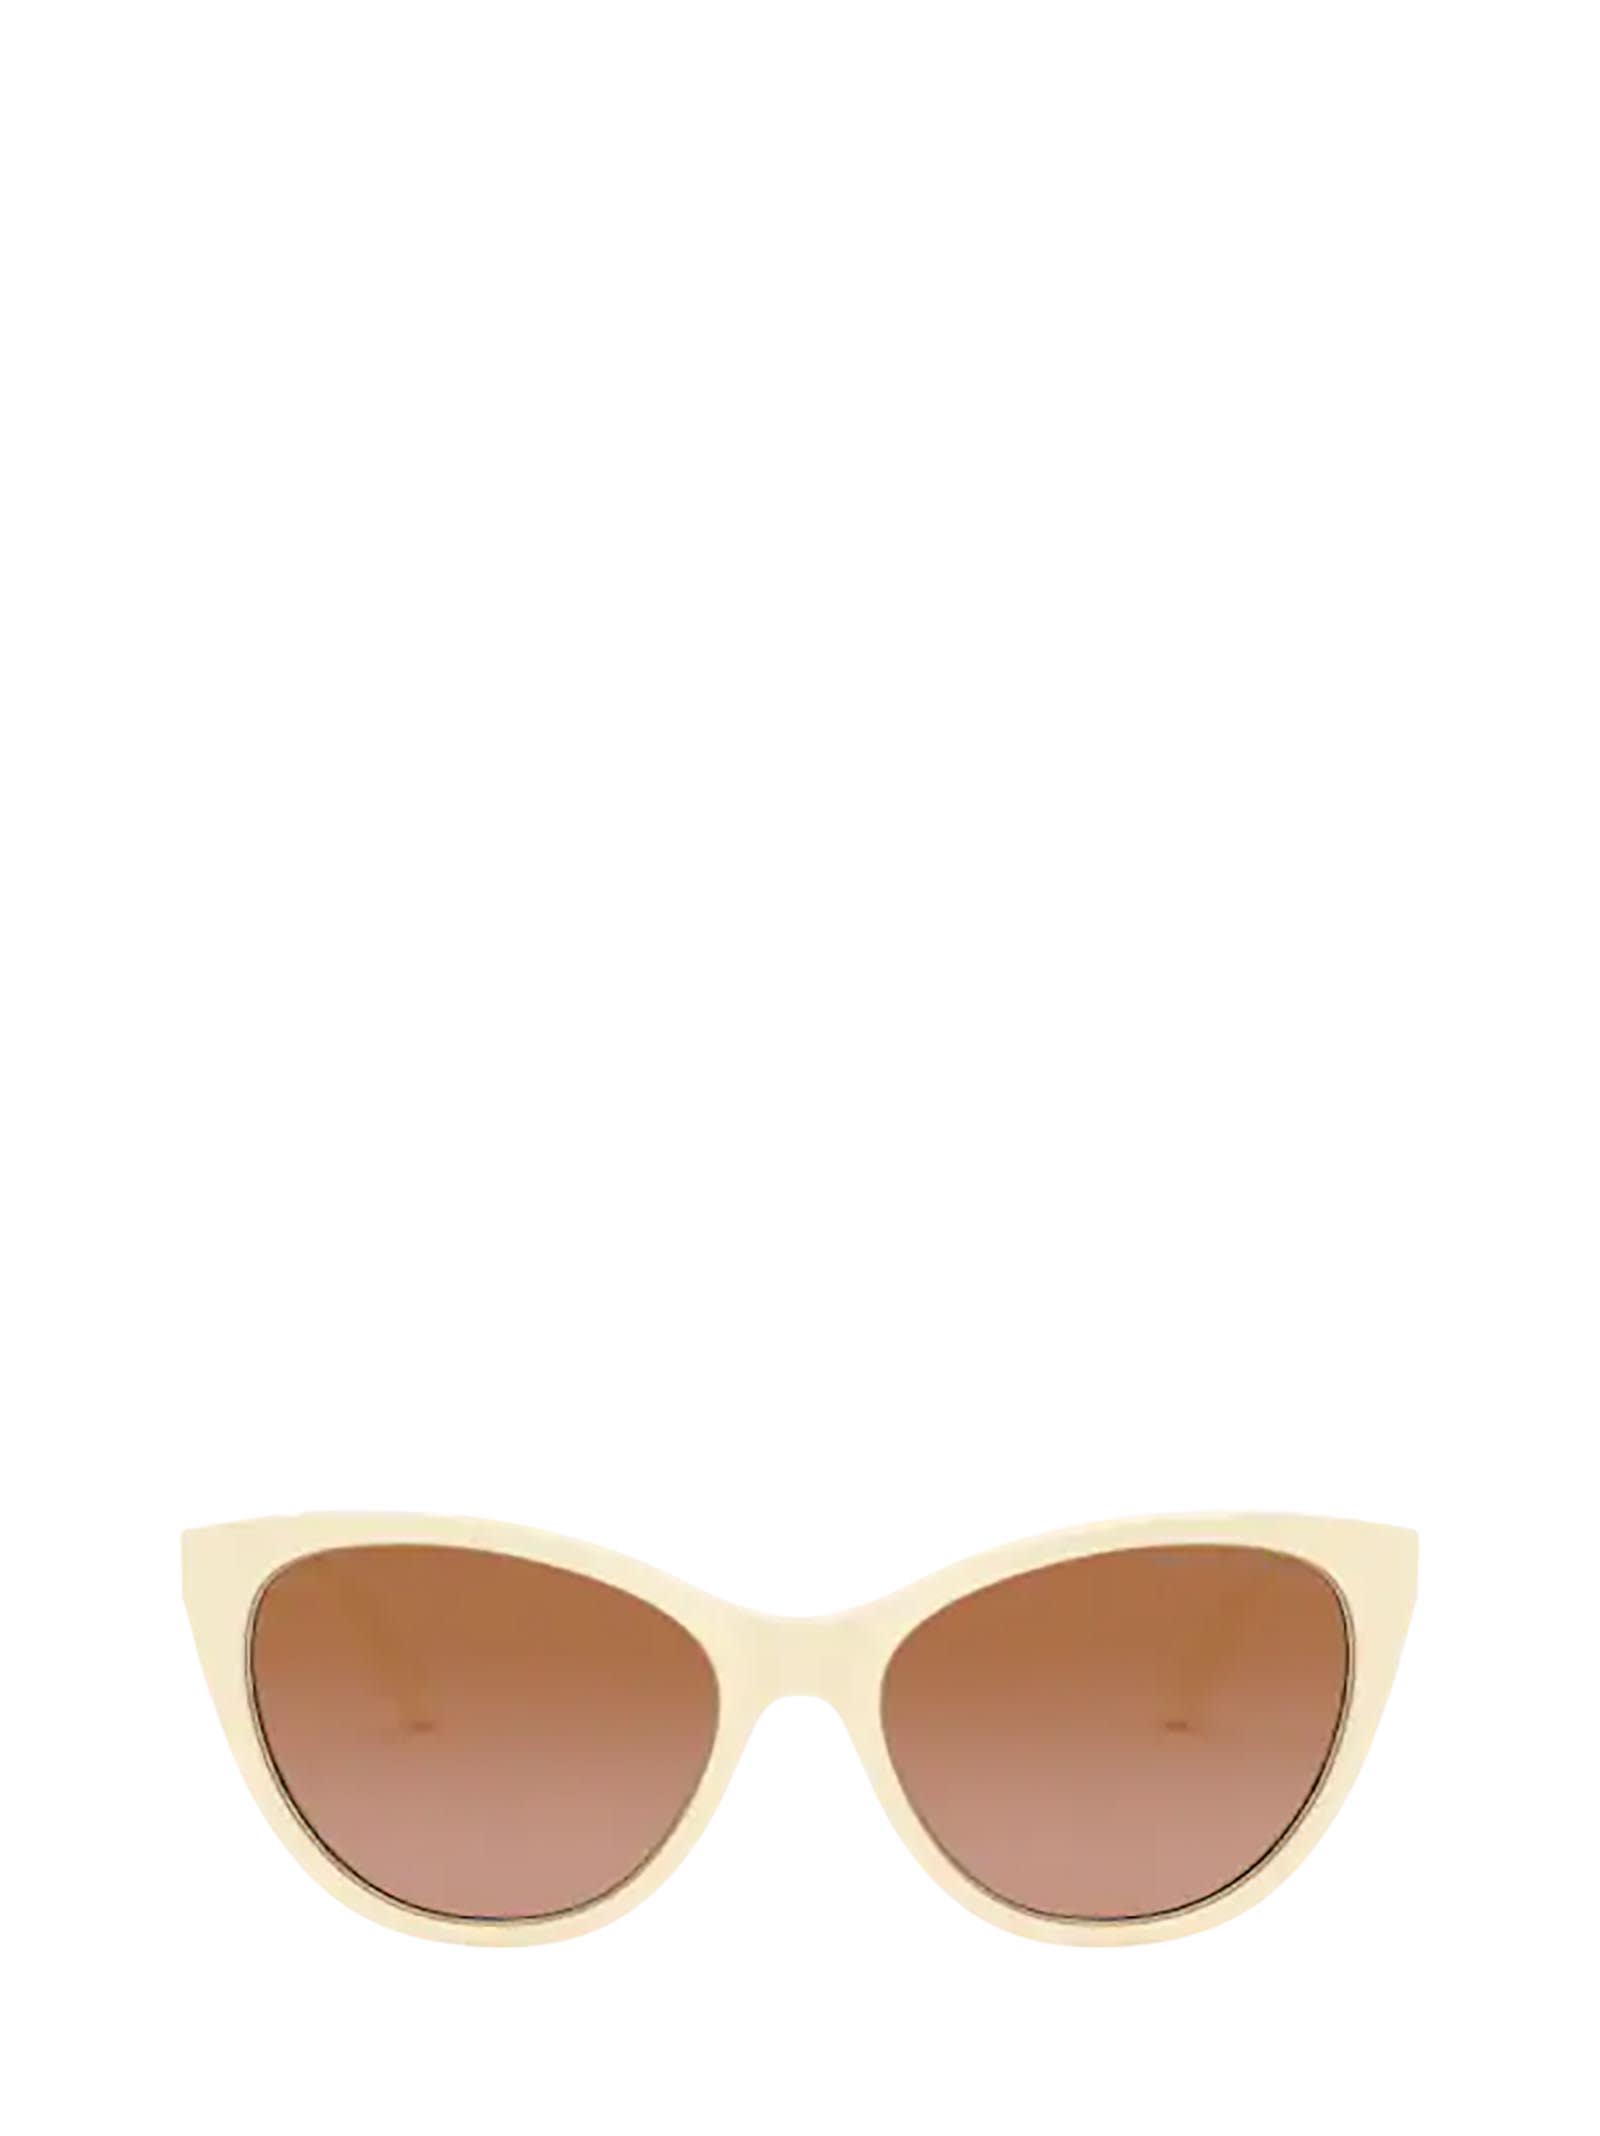 Ralph Lauren Ralph Lauren Rl8186 Shiny Cream White Sunglasses